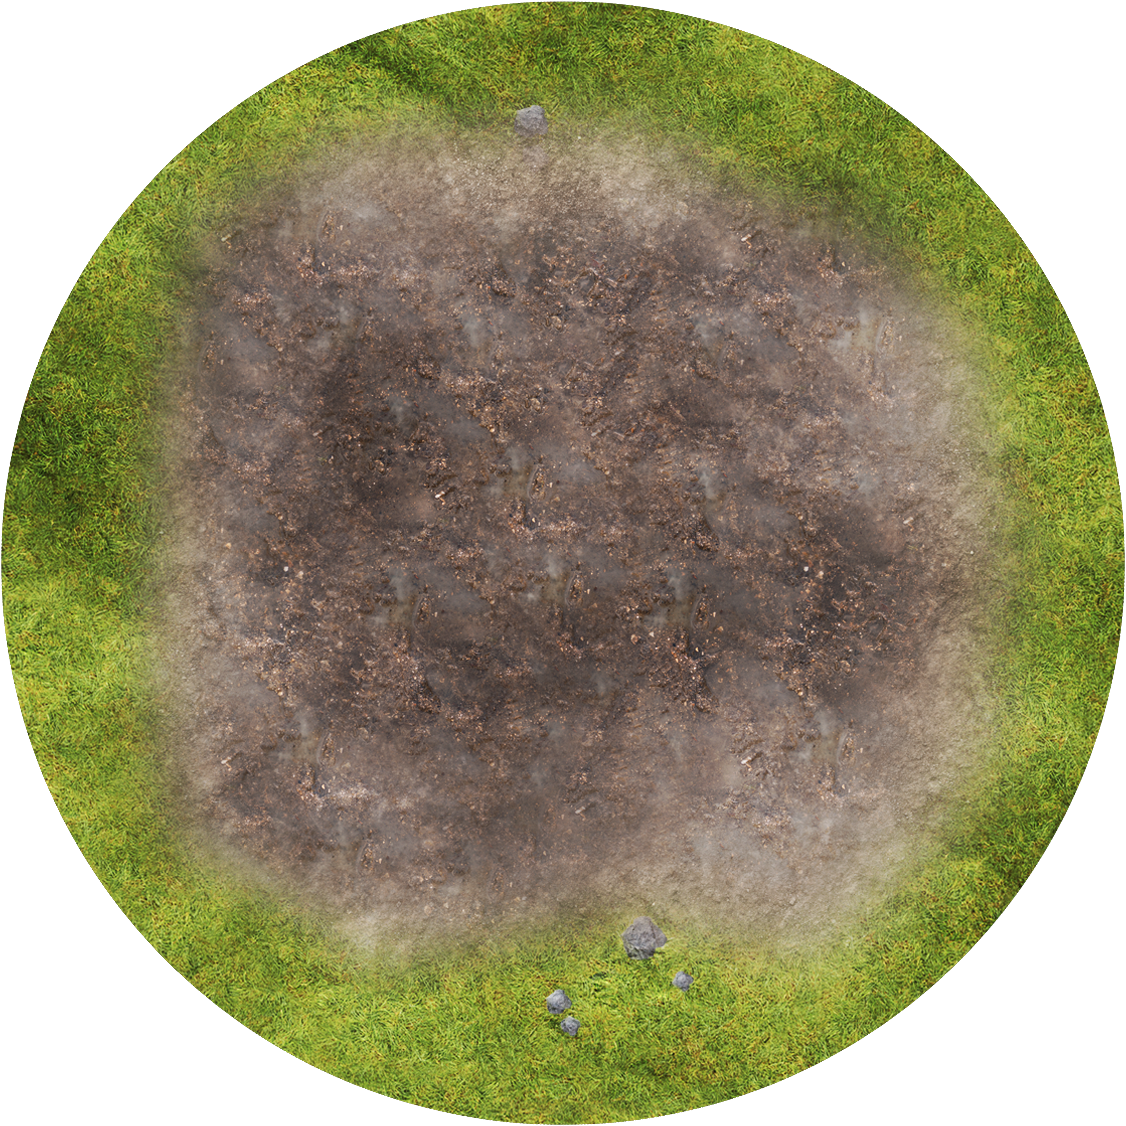 Terrain disks - Ploughed Field - Grass